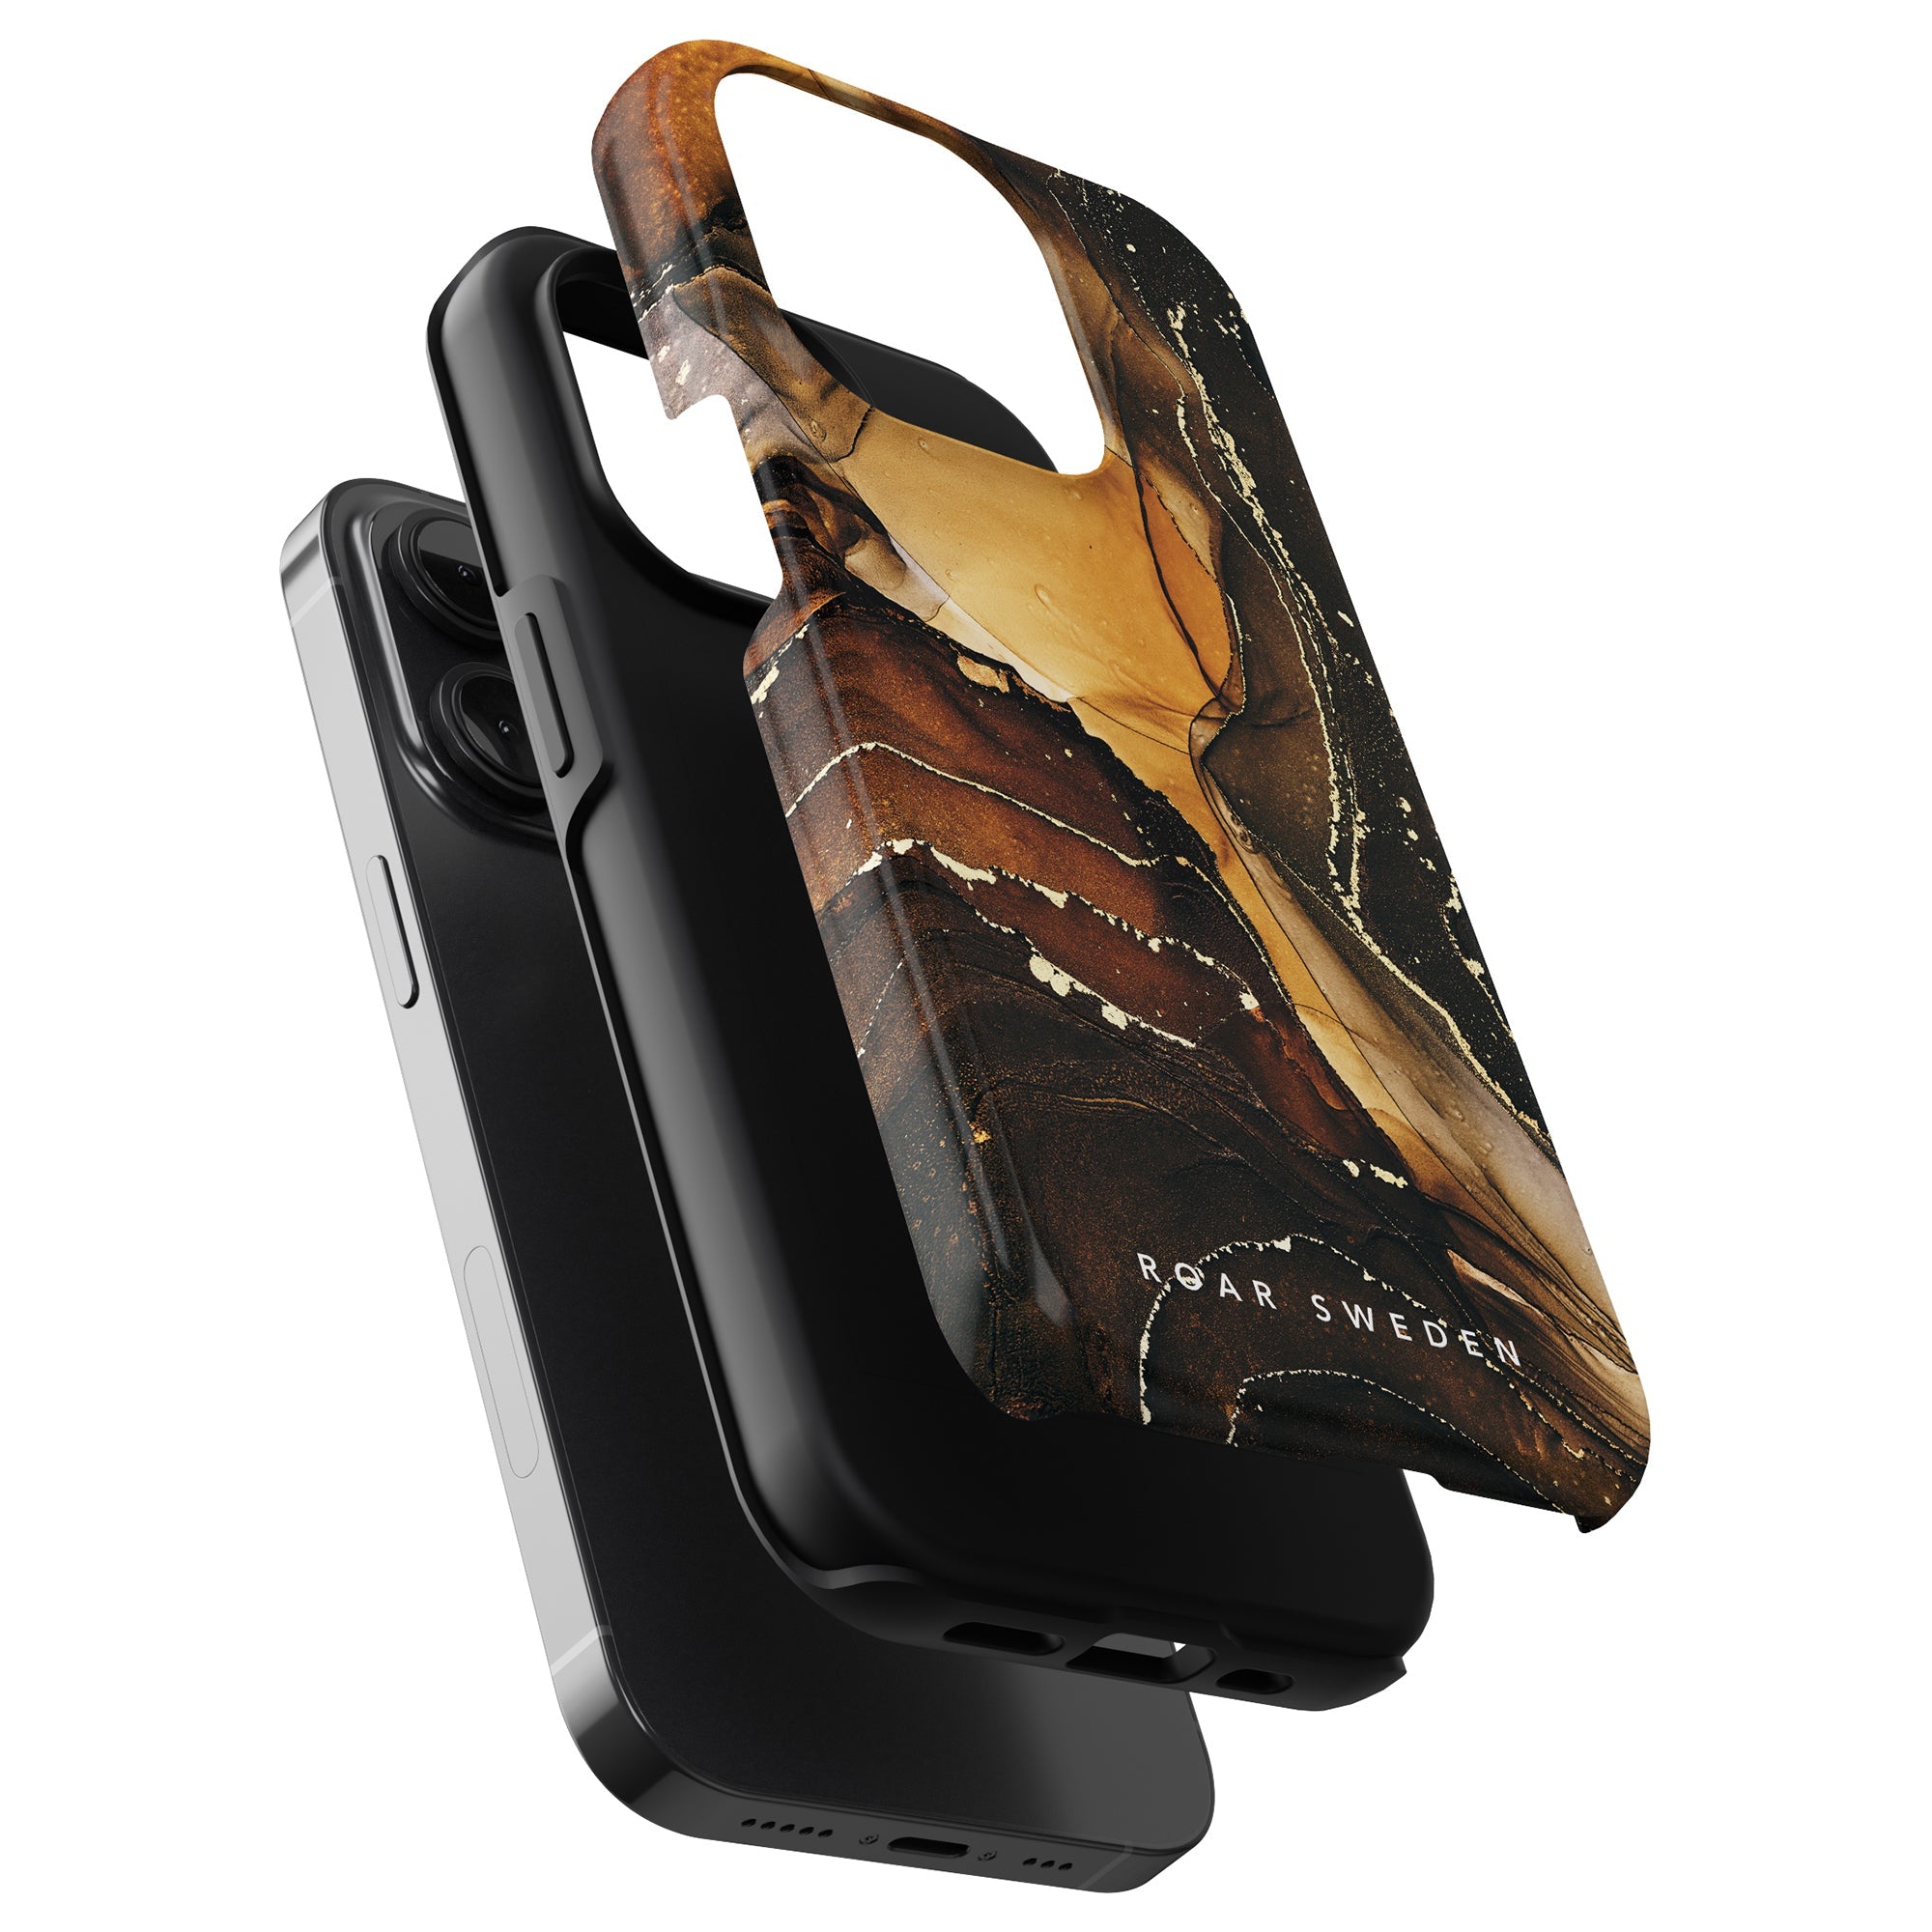 Förbättra din iPhone 11 Pro med det utsökta Royal Marble - Tough Case. Detta Royal Marble - Tough Case visar upp en fantastisk marmordesign som ger en touch av elegans och sofistikering till din enhet.